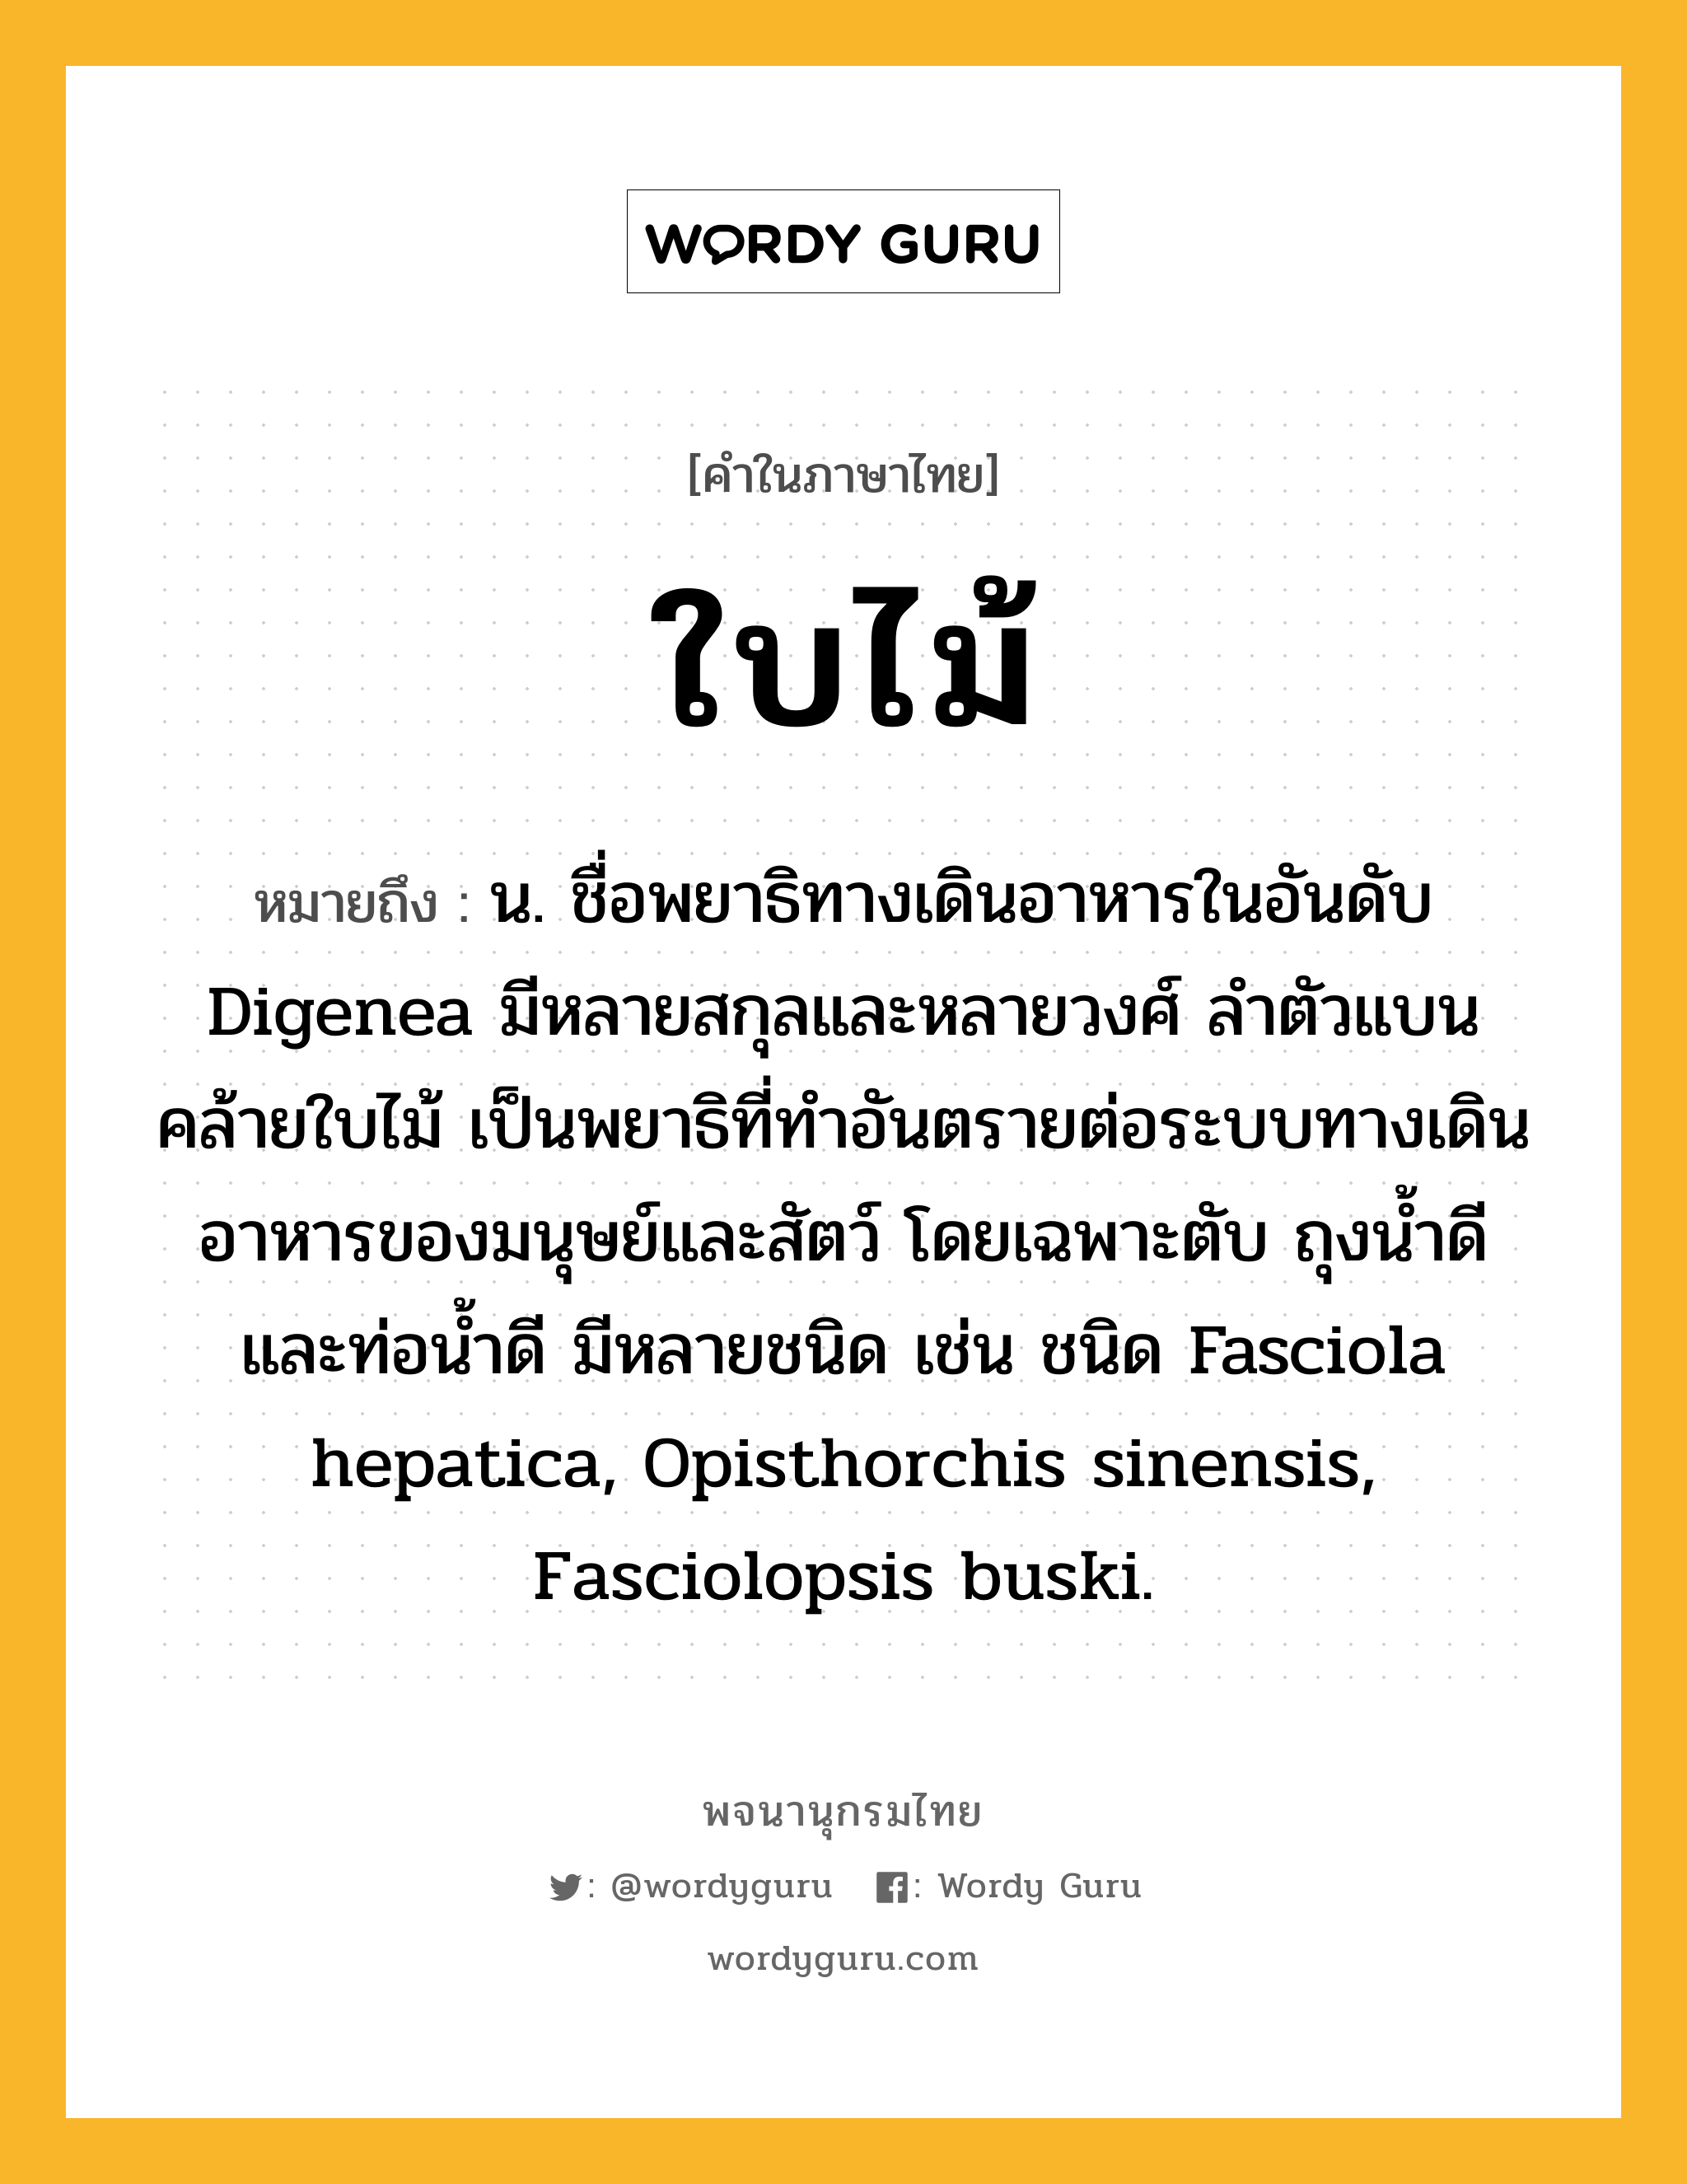 ใบไม้ หมายถึงอะไร?, คำในภาษาไทย ใบไม้ หมายถึง น. ชื่อพยาธิทางเดินอาหารในอันดับ Digenea มีหลายสกุลและหลายวงศ์ ลําตัวแบนคล้ายใบไม้ เป็นพยาธิที่ทําอันตรายต่อระบบทางเดินอาหารของมนุษย์และสัตว์ โดยเฉพาะตับ ถุงนํ้าดีและท่อนํ้าดี มีหลายชนิด เช่น ชนิด Fasciola hepatica, Opisthorchis sinensis, Fasciolopsis buski.